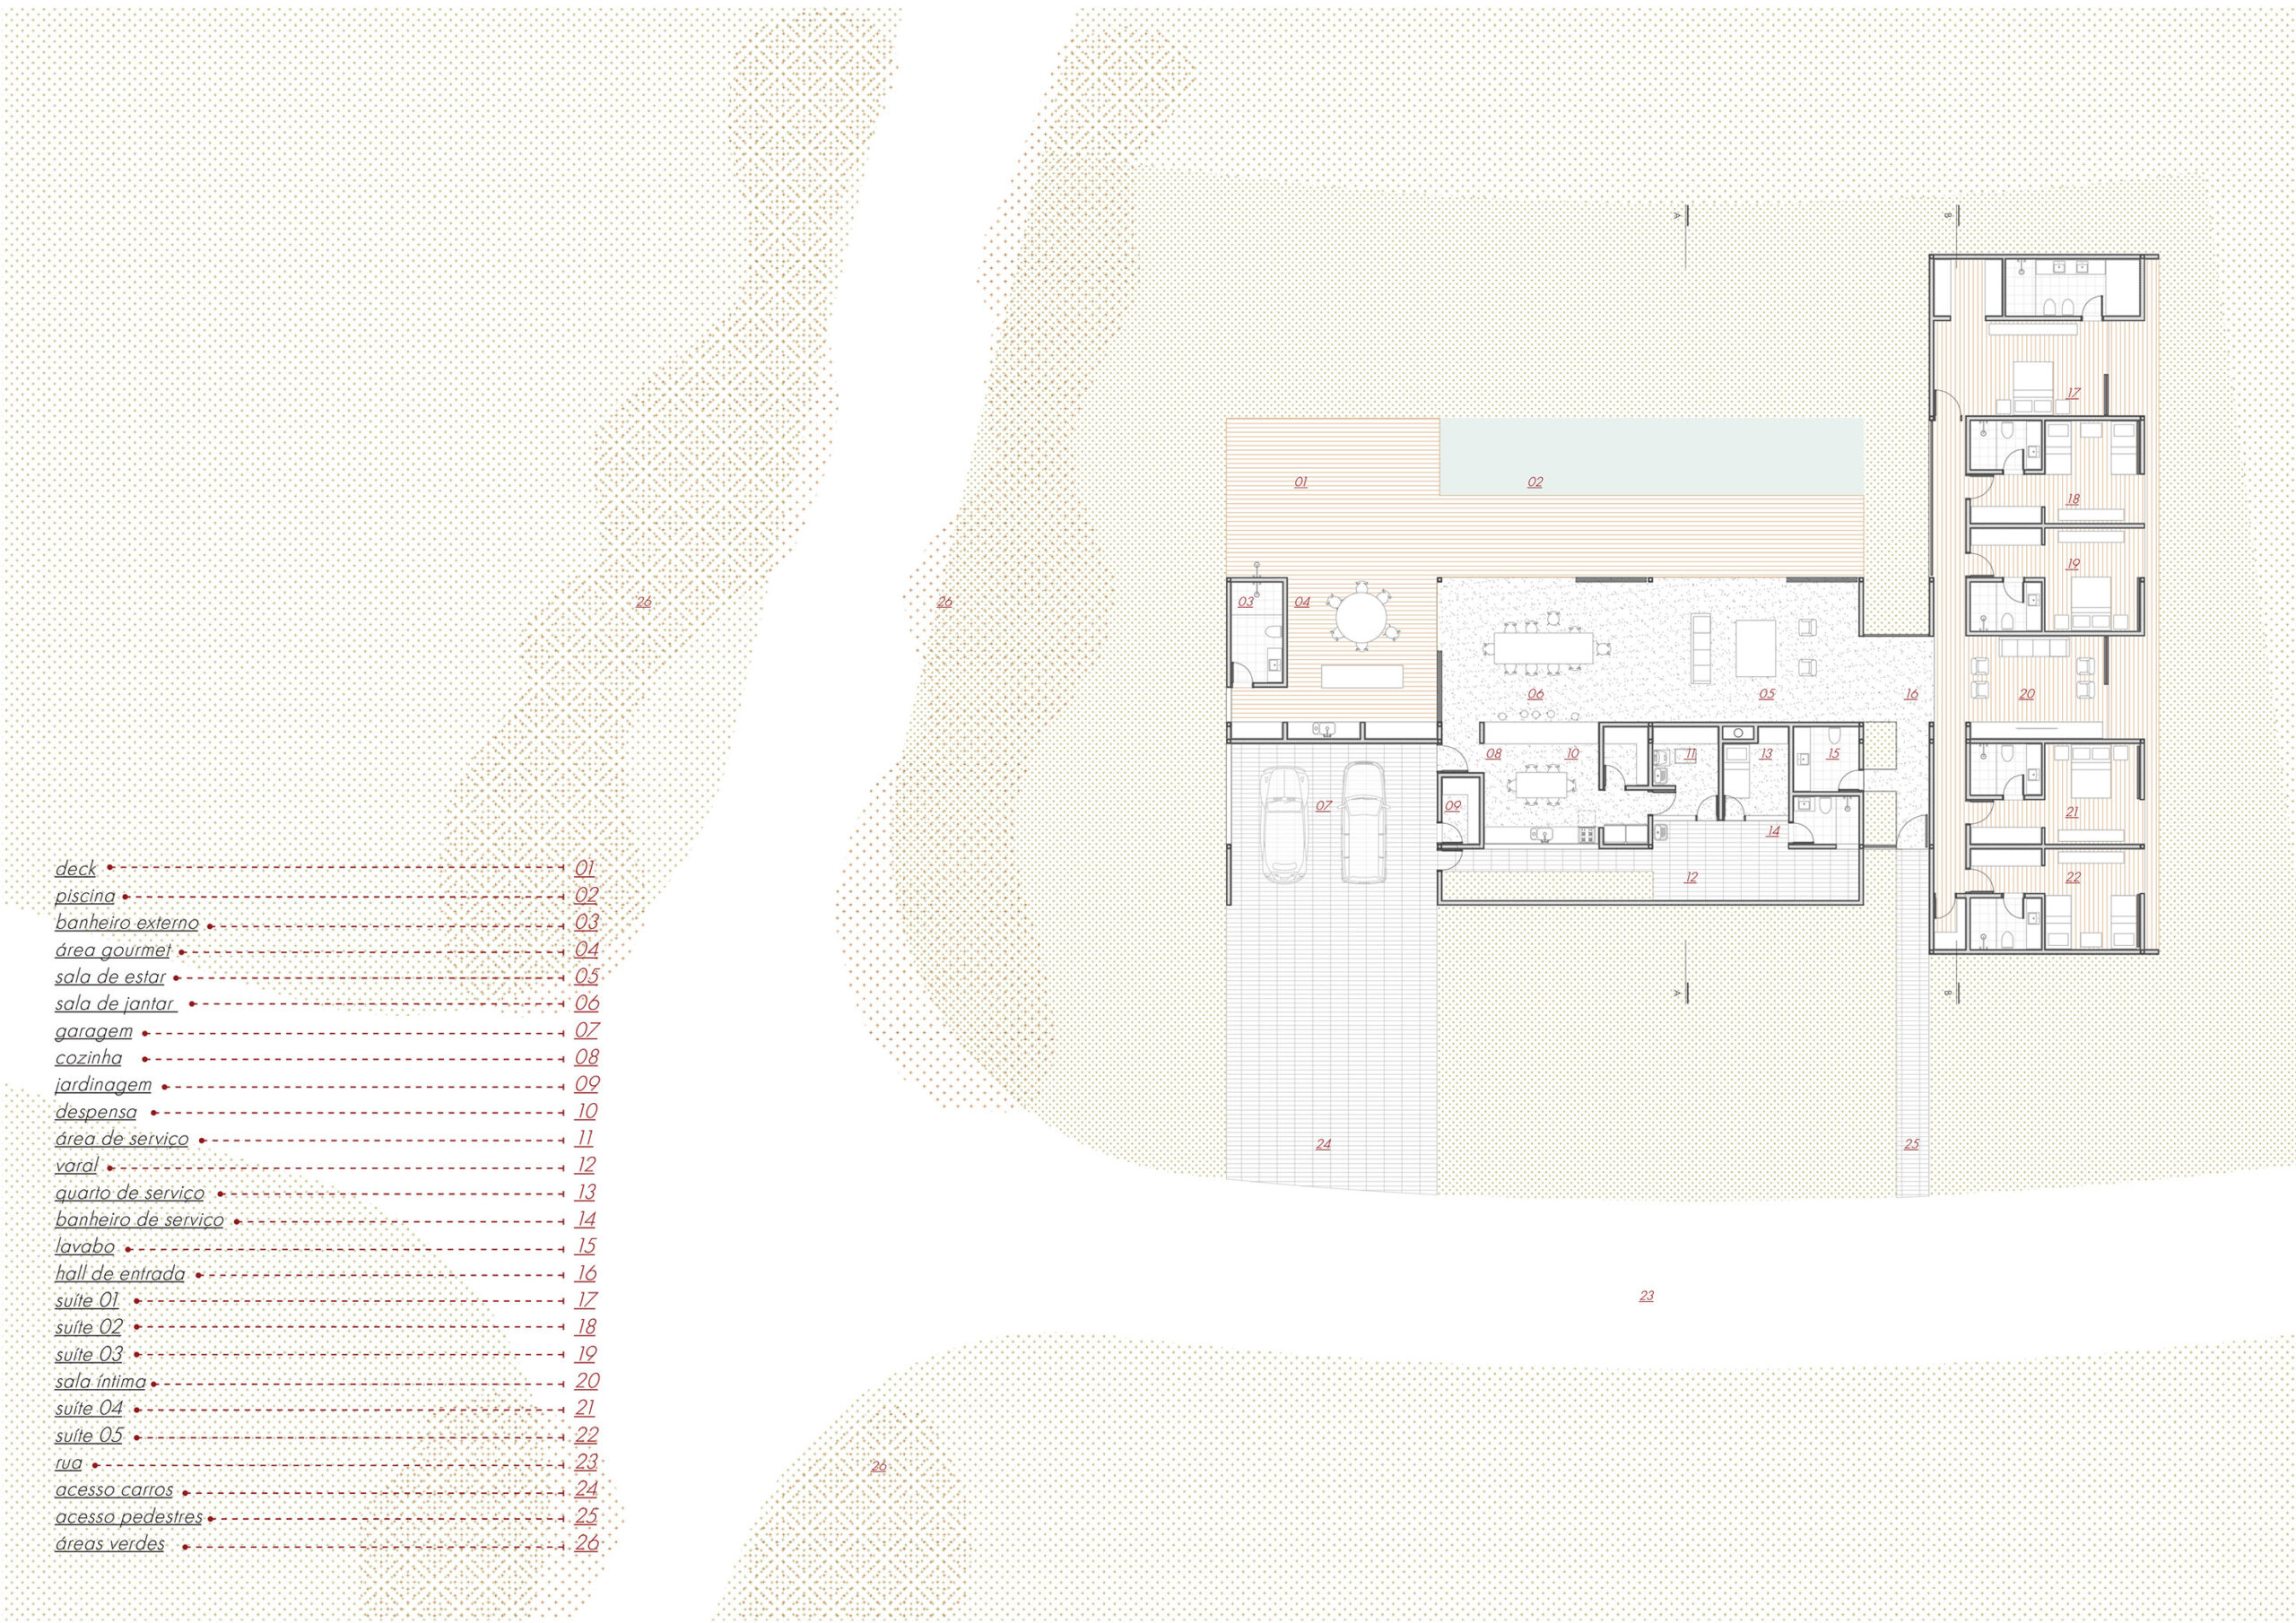 Vaga arquitetura - Desenho - Casa manacá (3)